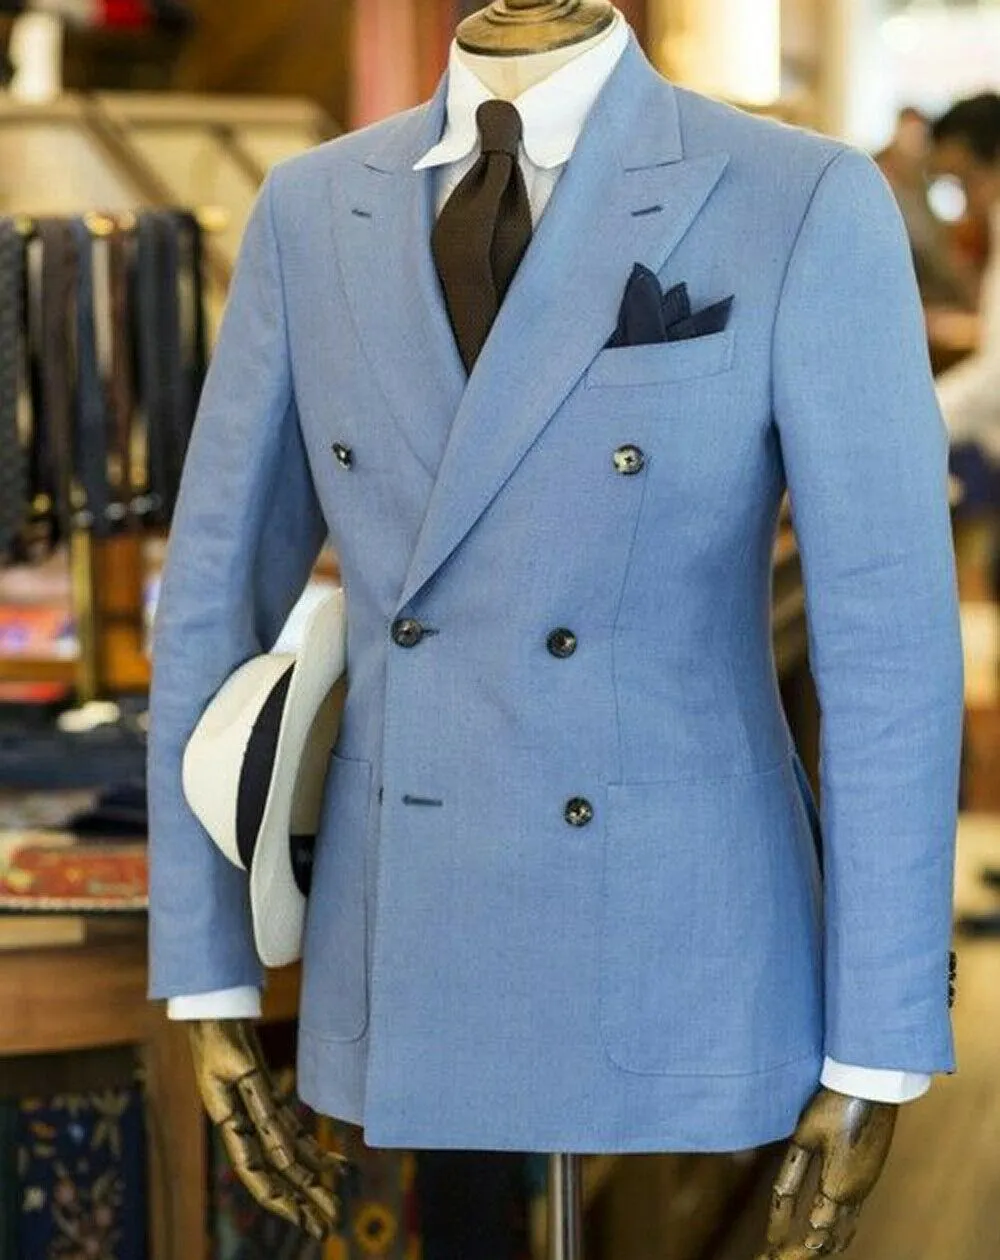 Gorąca sprzedaż Lights Light Blue Wedding Men Suits Peak Lapel Dwa kawałki Business Groom Tuxedos (Kurtka + Spodnie + Krawat) W1226